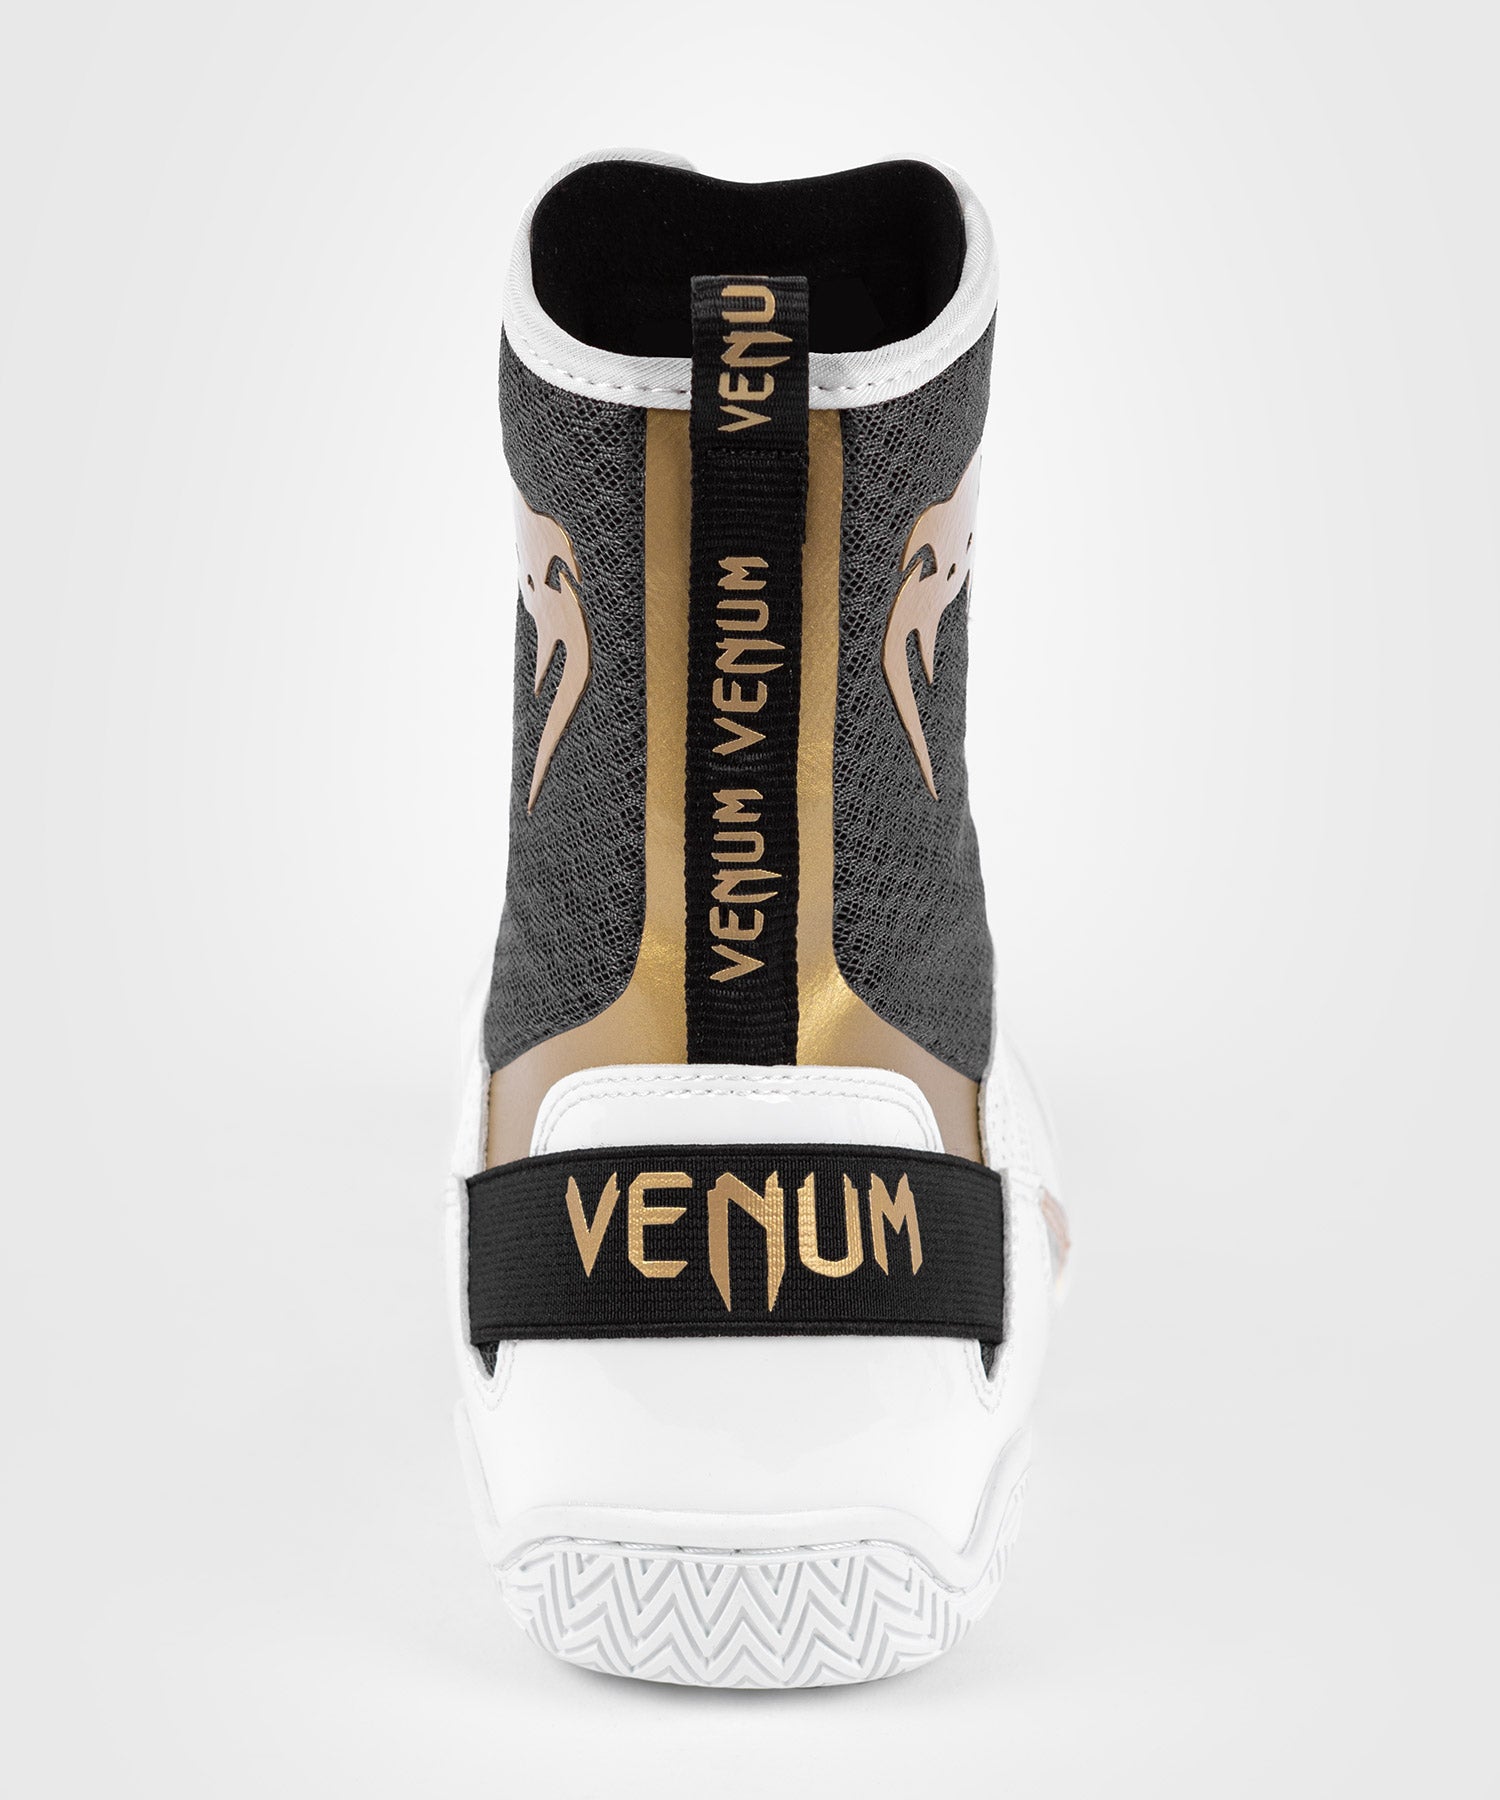 Chaussure de Boxe Venum Elite - Blanc/Noir/Or